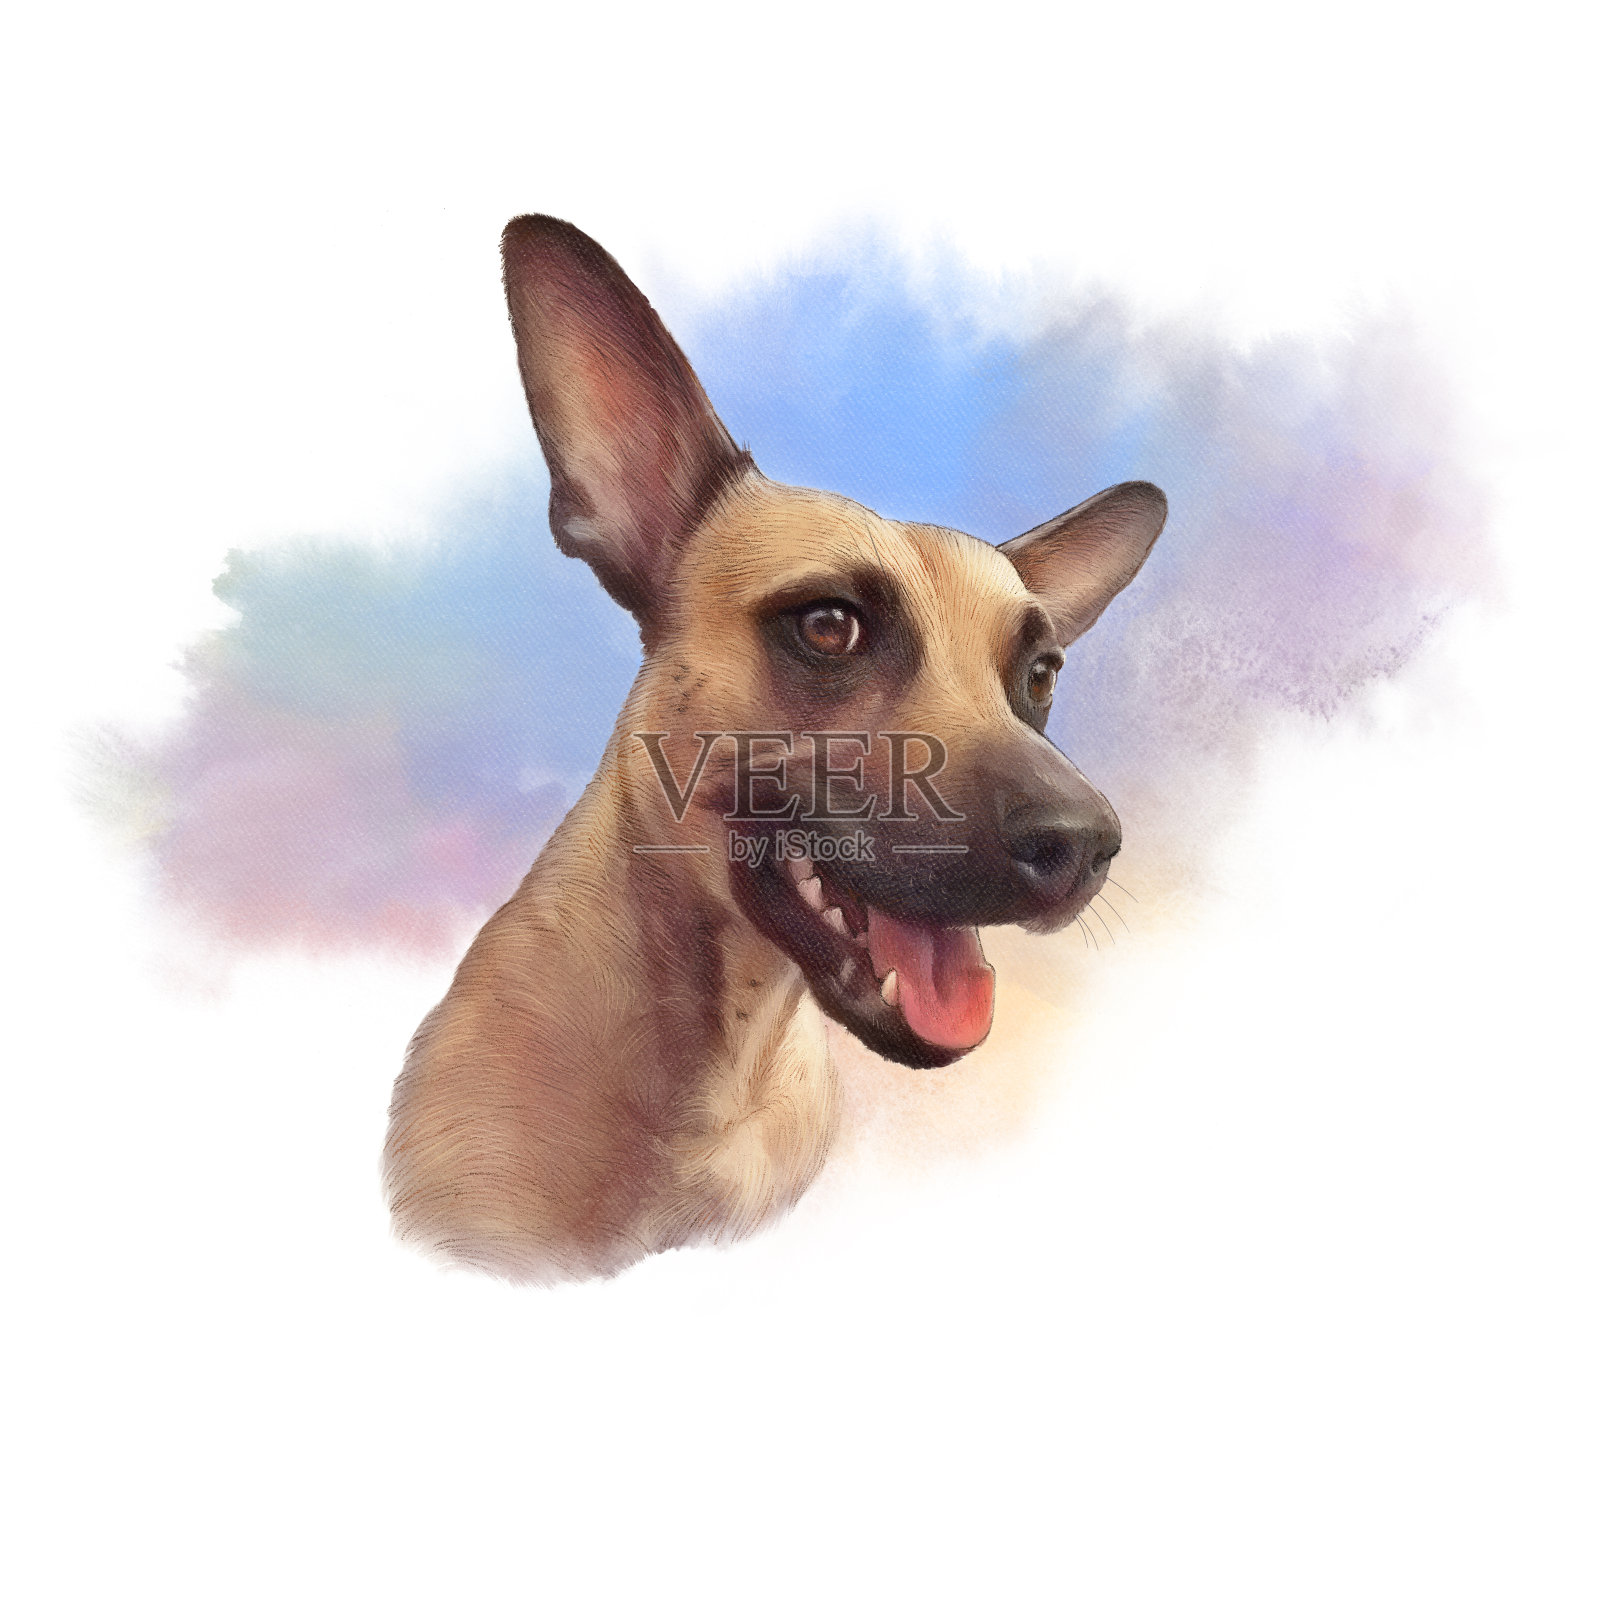 哈巴狗的肖像设计元素图片